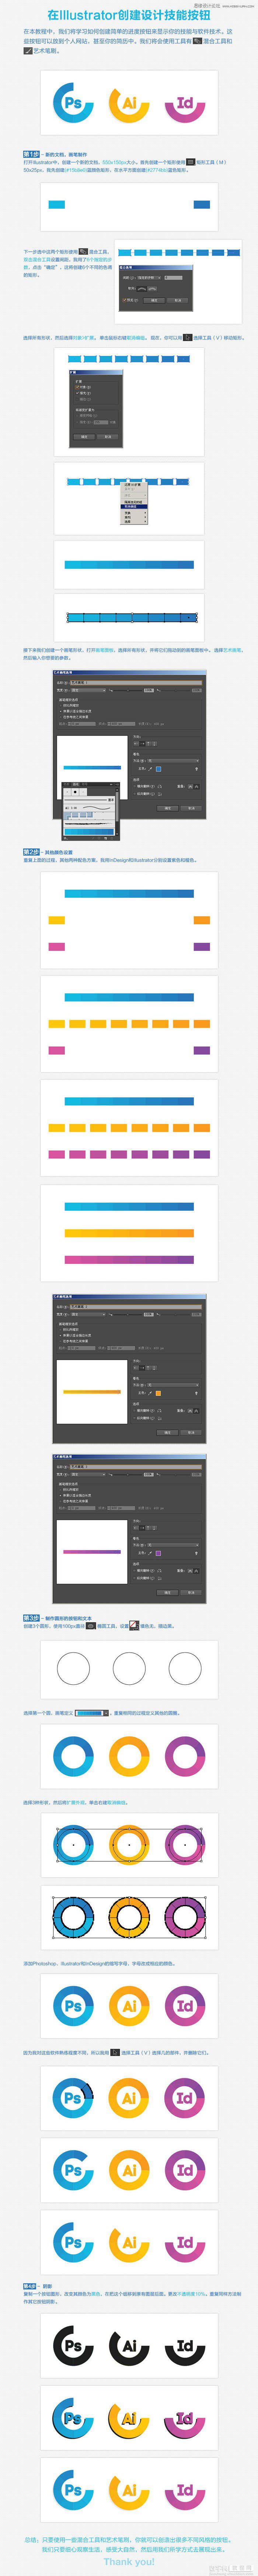 在Illustrator创建简单的渐变色效果的进度技能按钮1